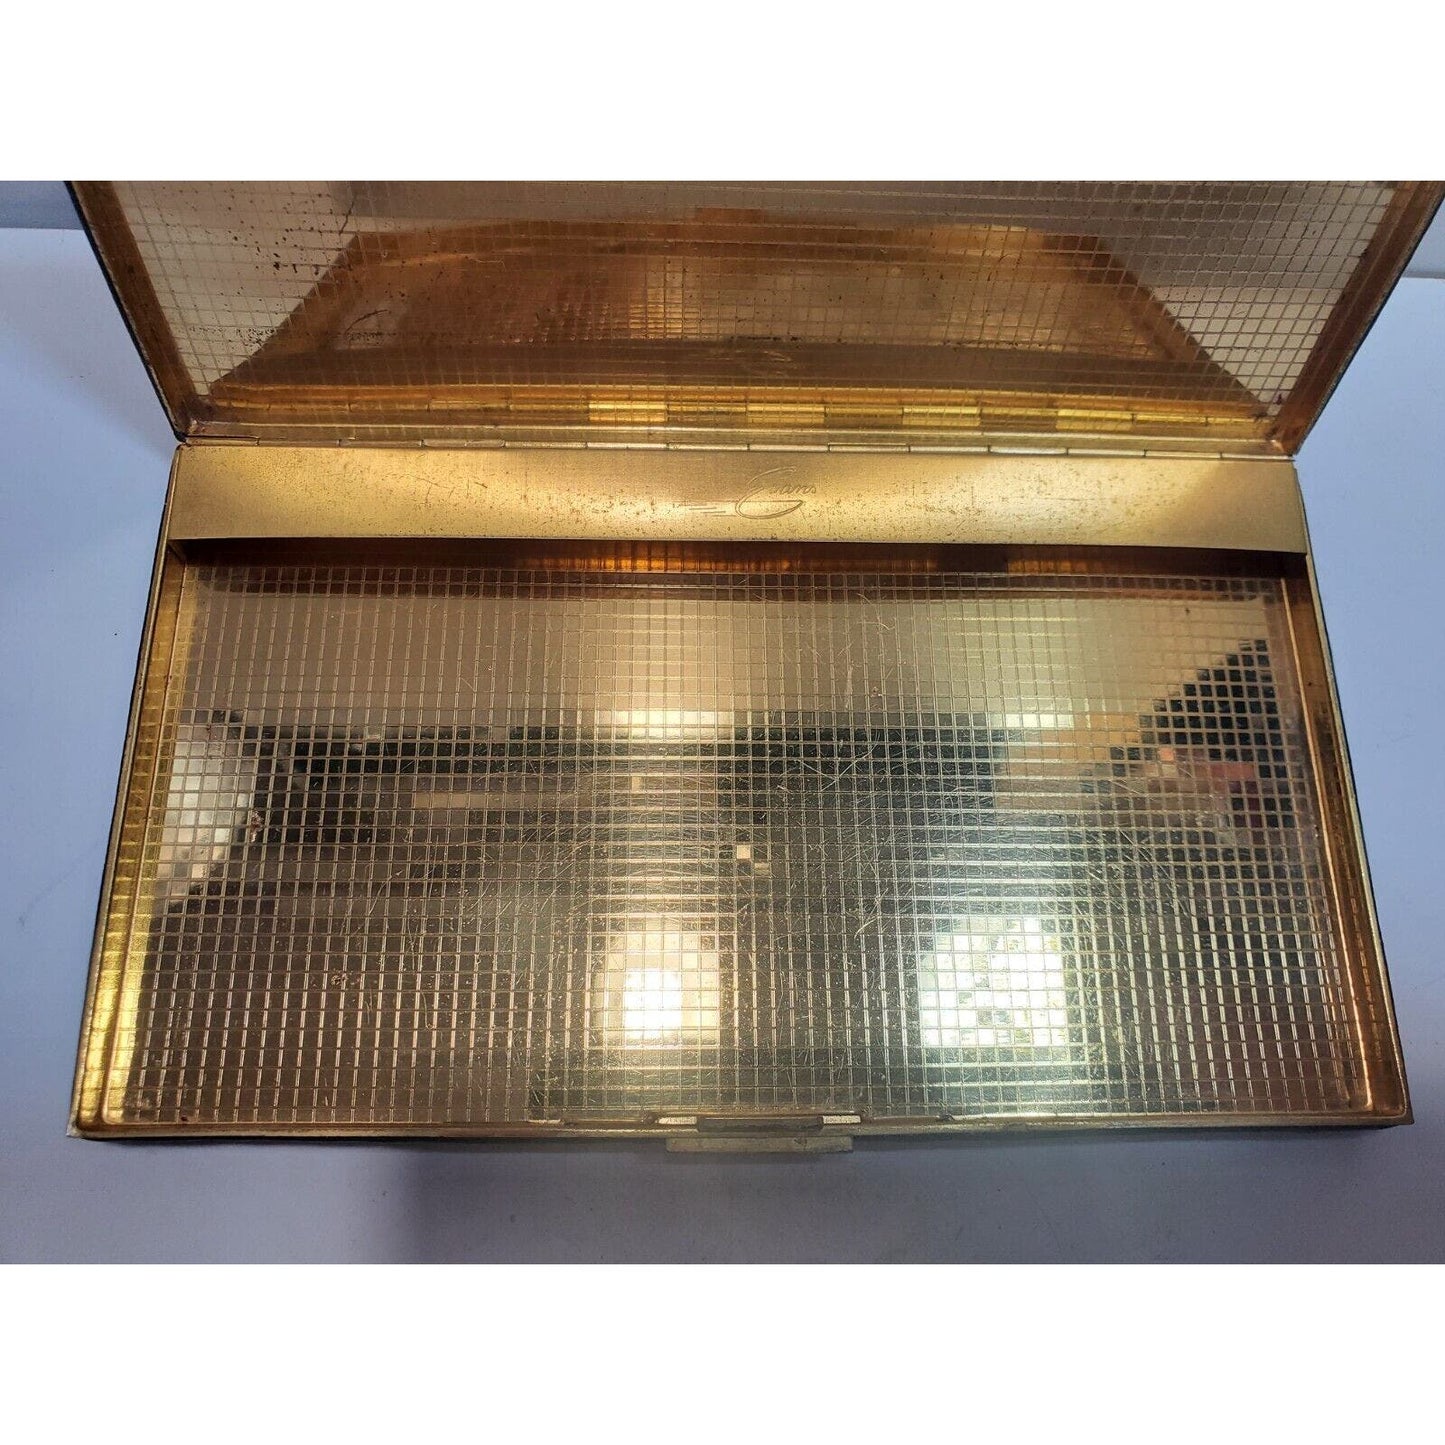 ANTIQUE Leather & GOLD TONE EVANS CIGARETTE CASE 5 x 3" 6496/20